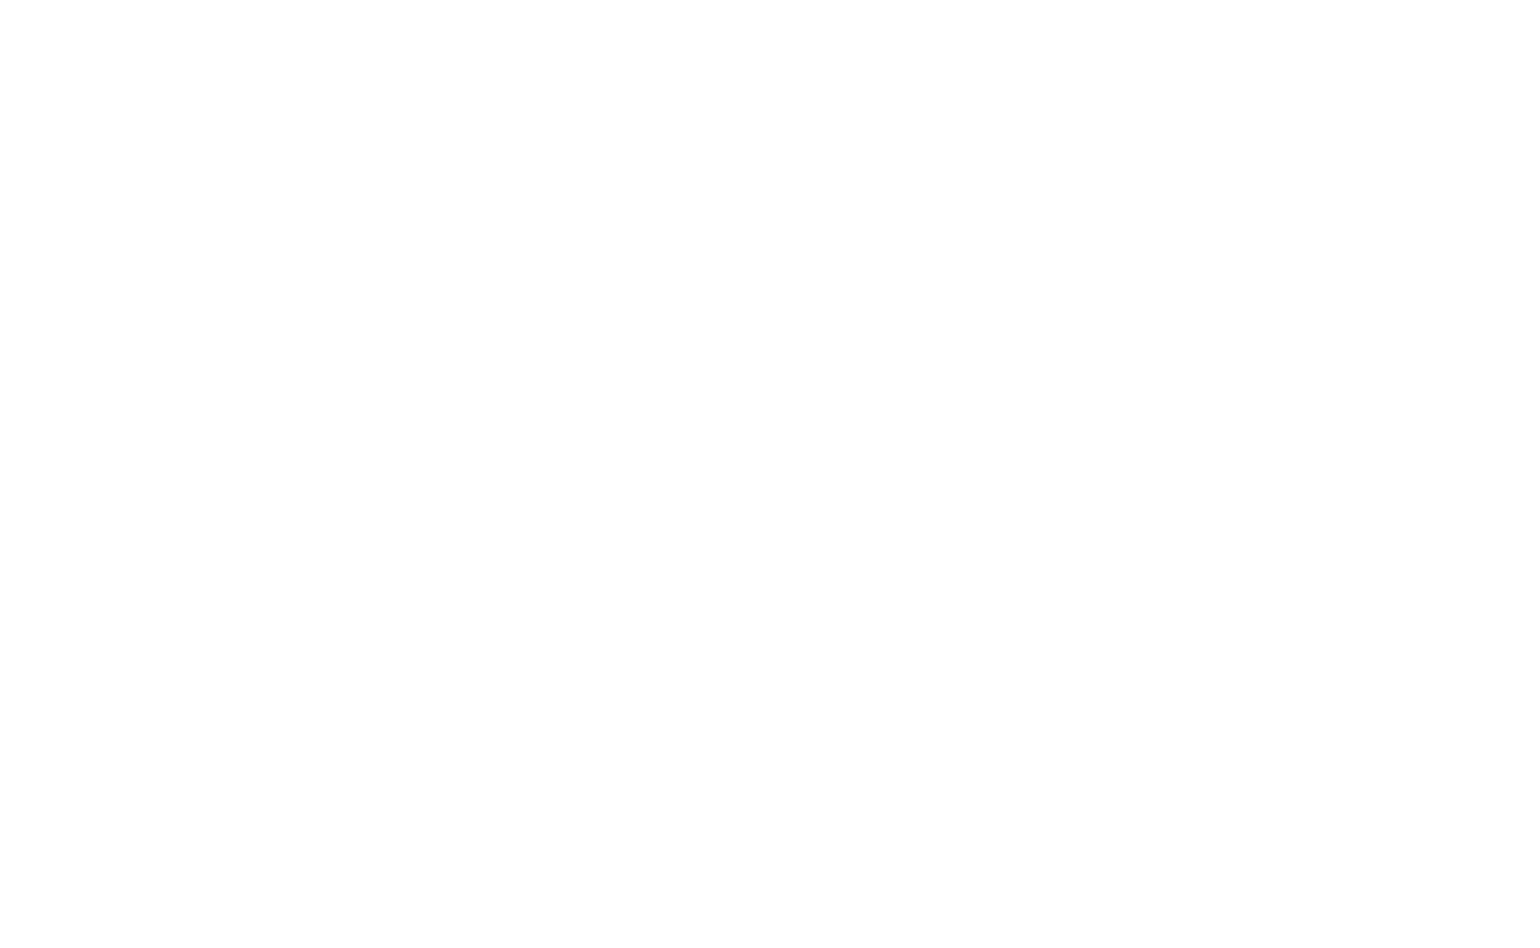 BlueScope Steel logo large for dark backgrounds (transparent PNG)